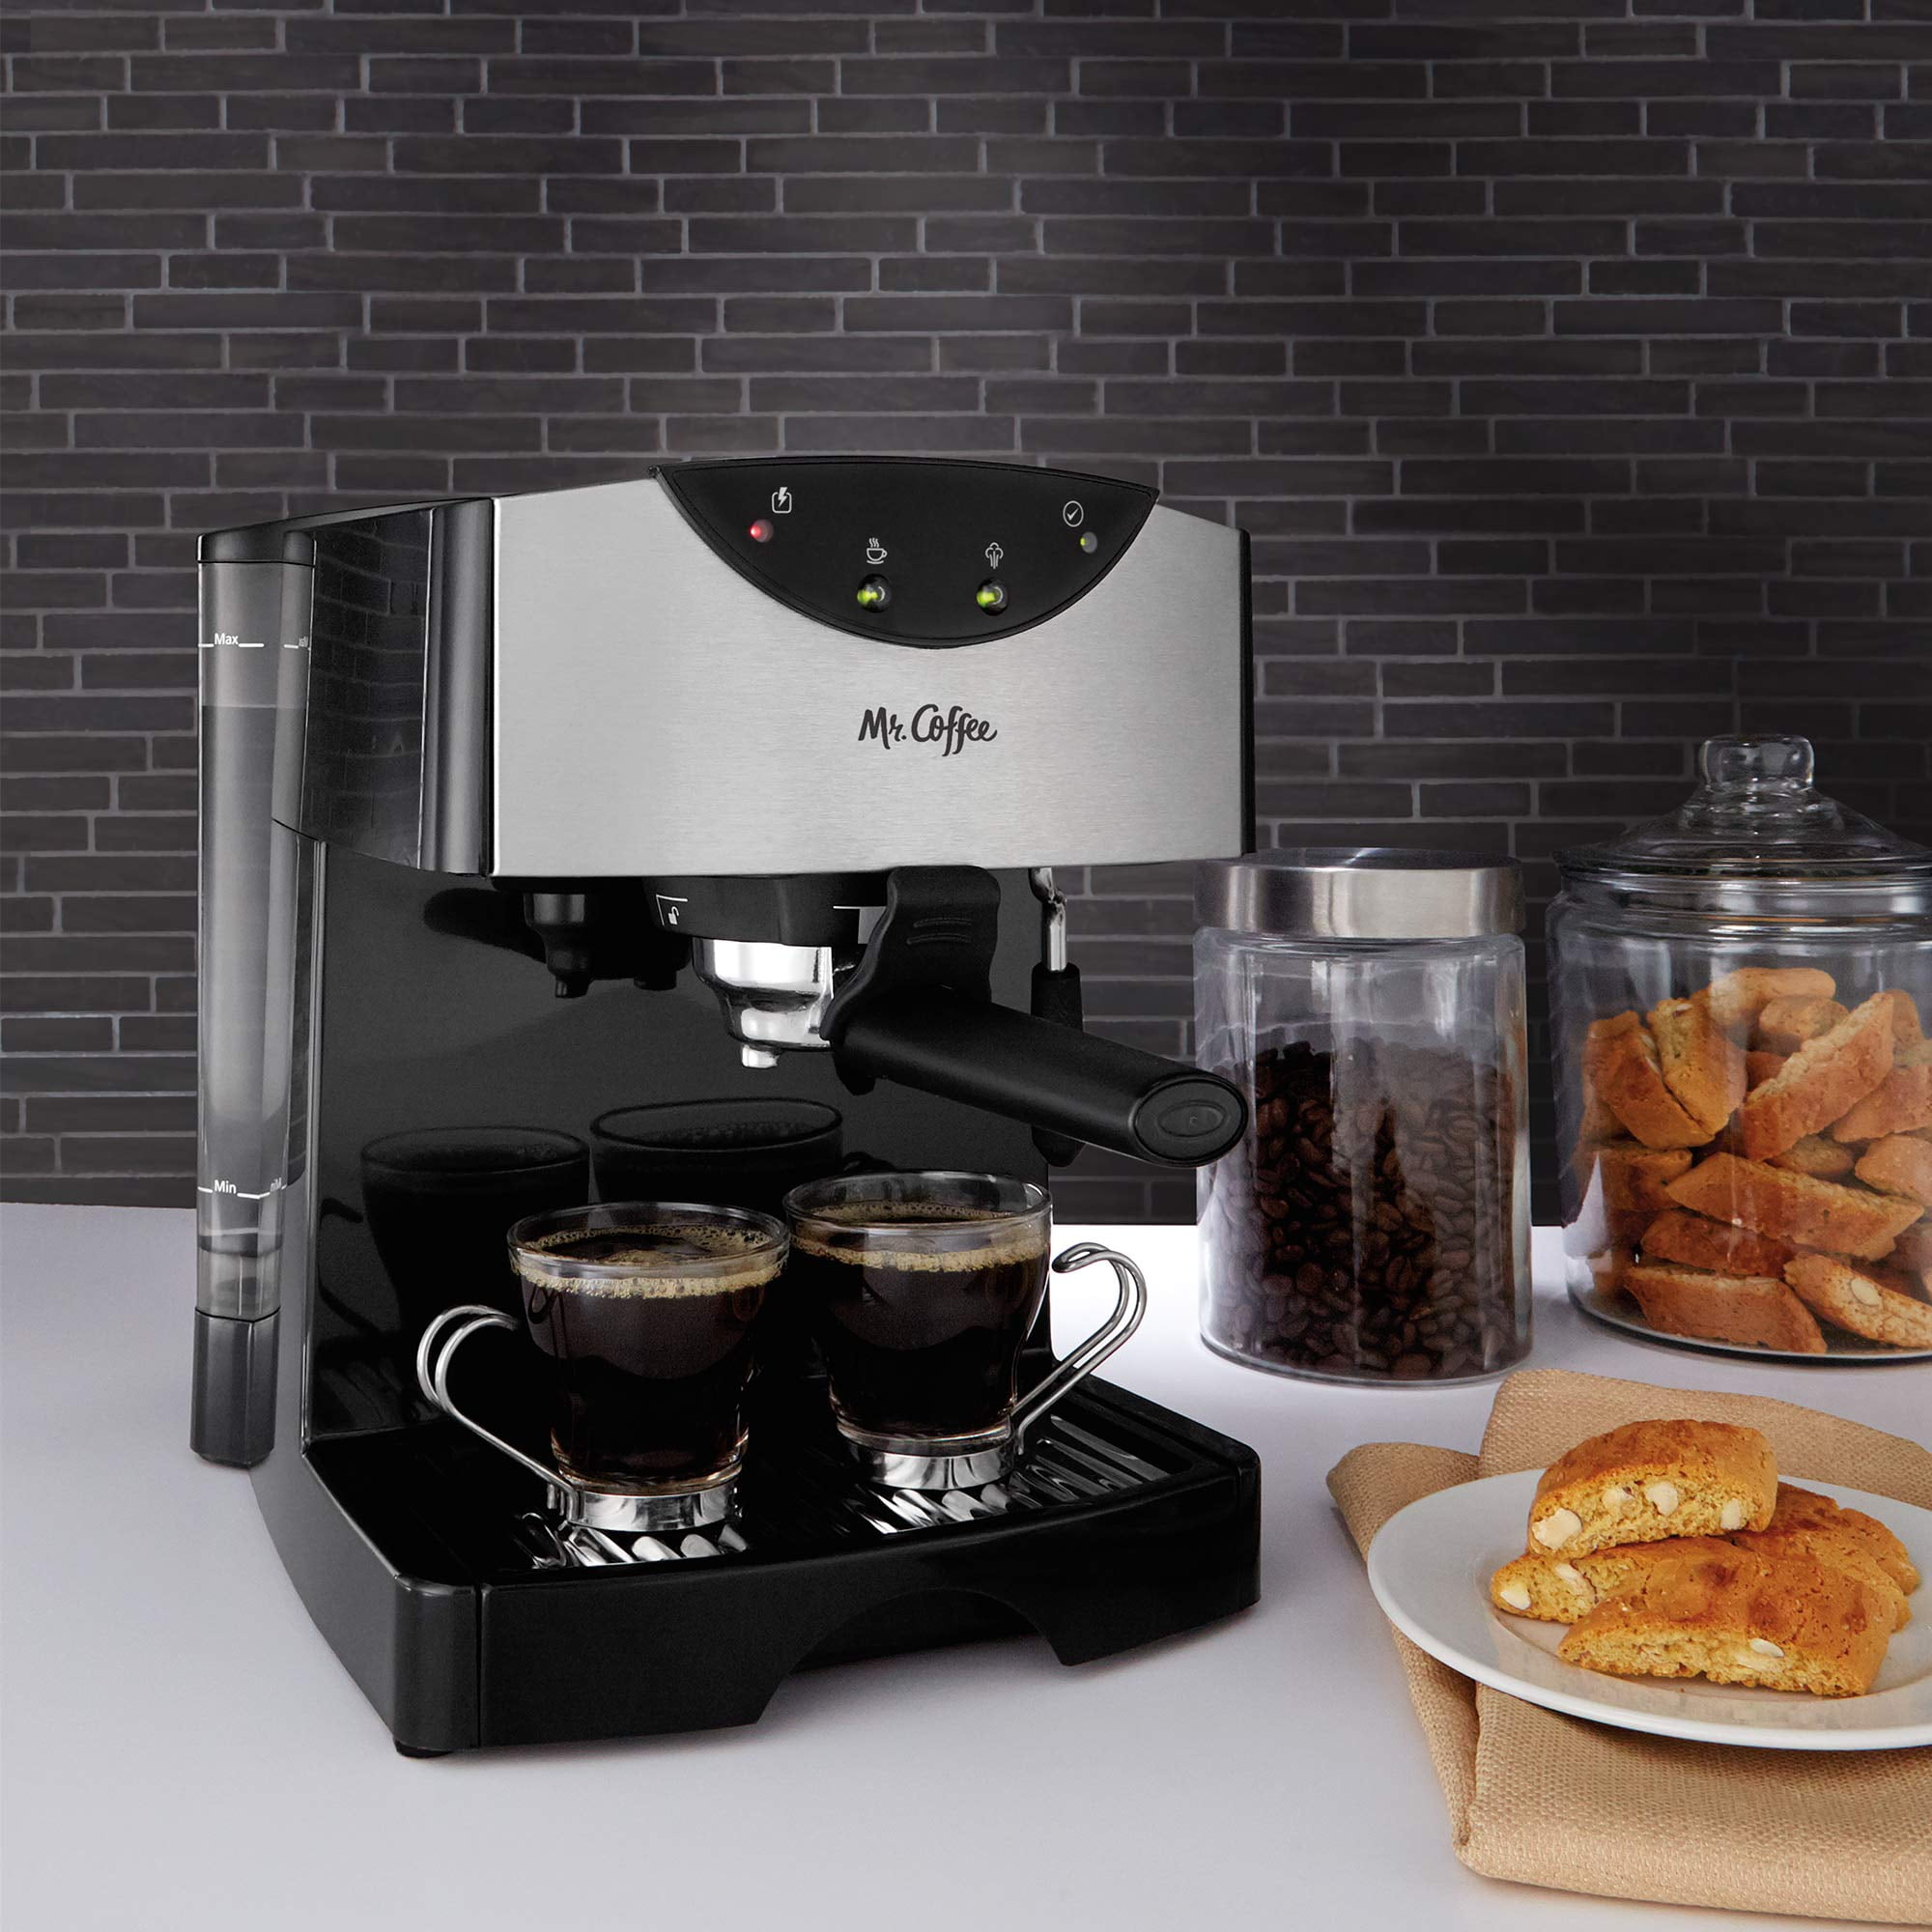 Mr. Coffee Espresso Cappuccino Maker Black Model ECM2 Makes 4 Cups Tested 